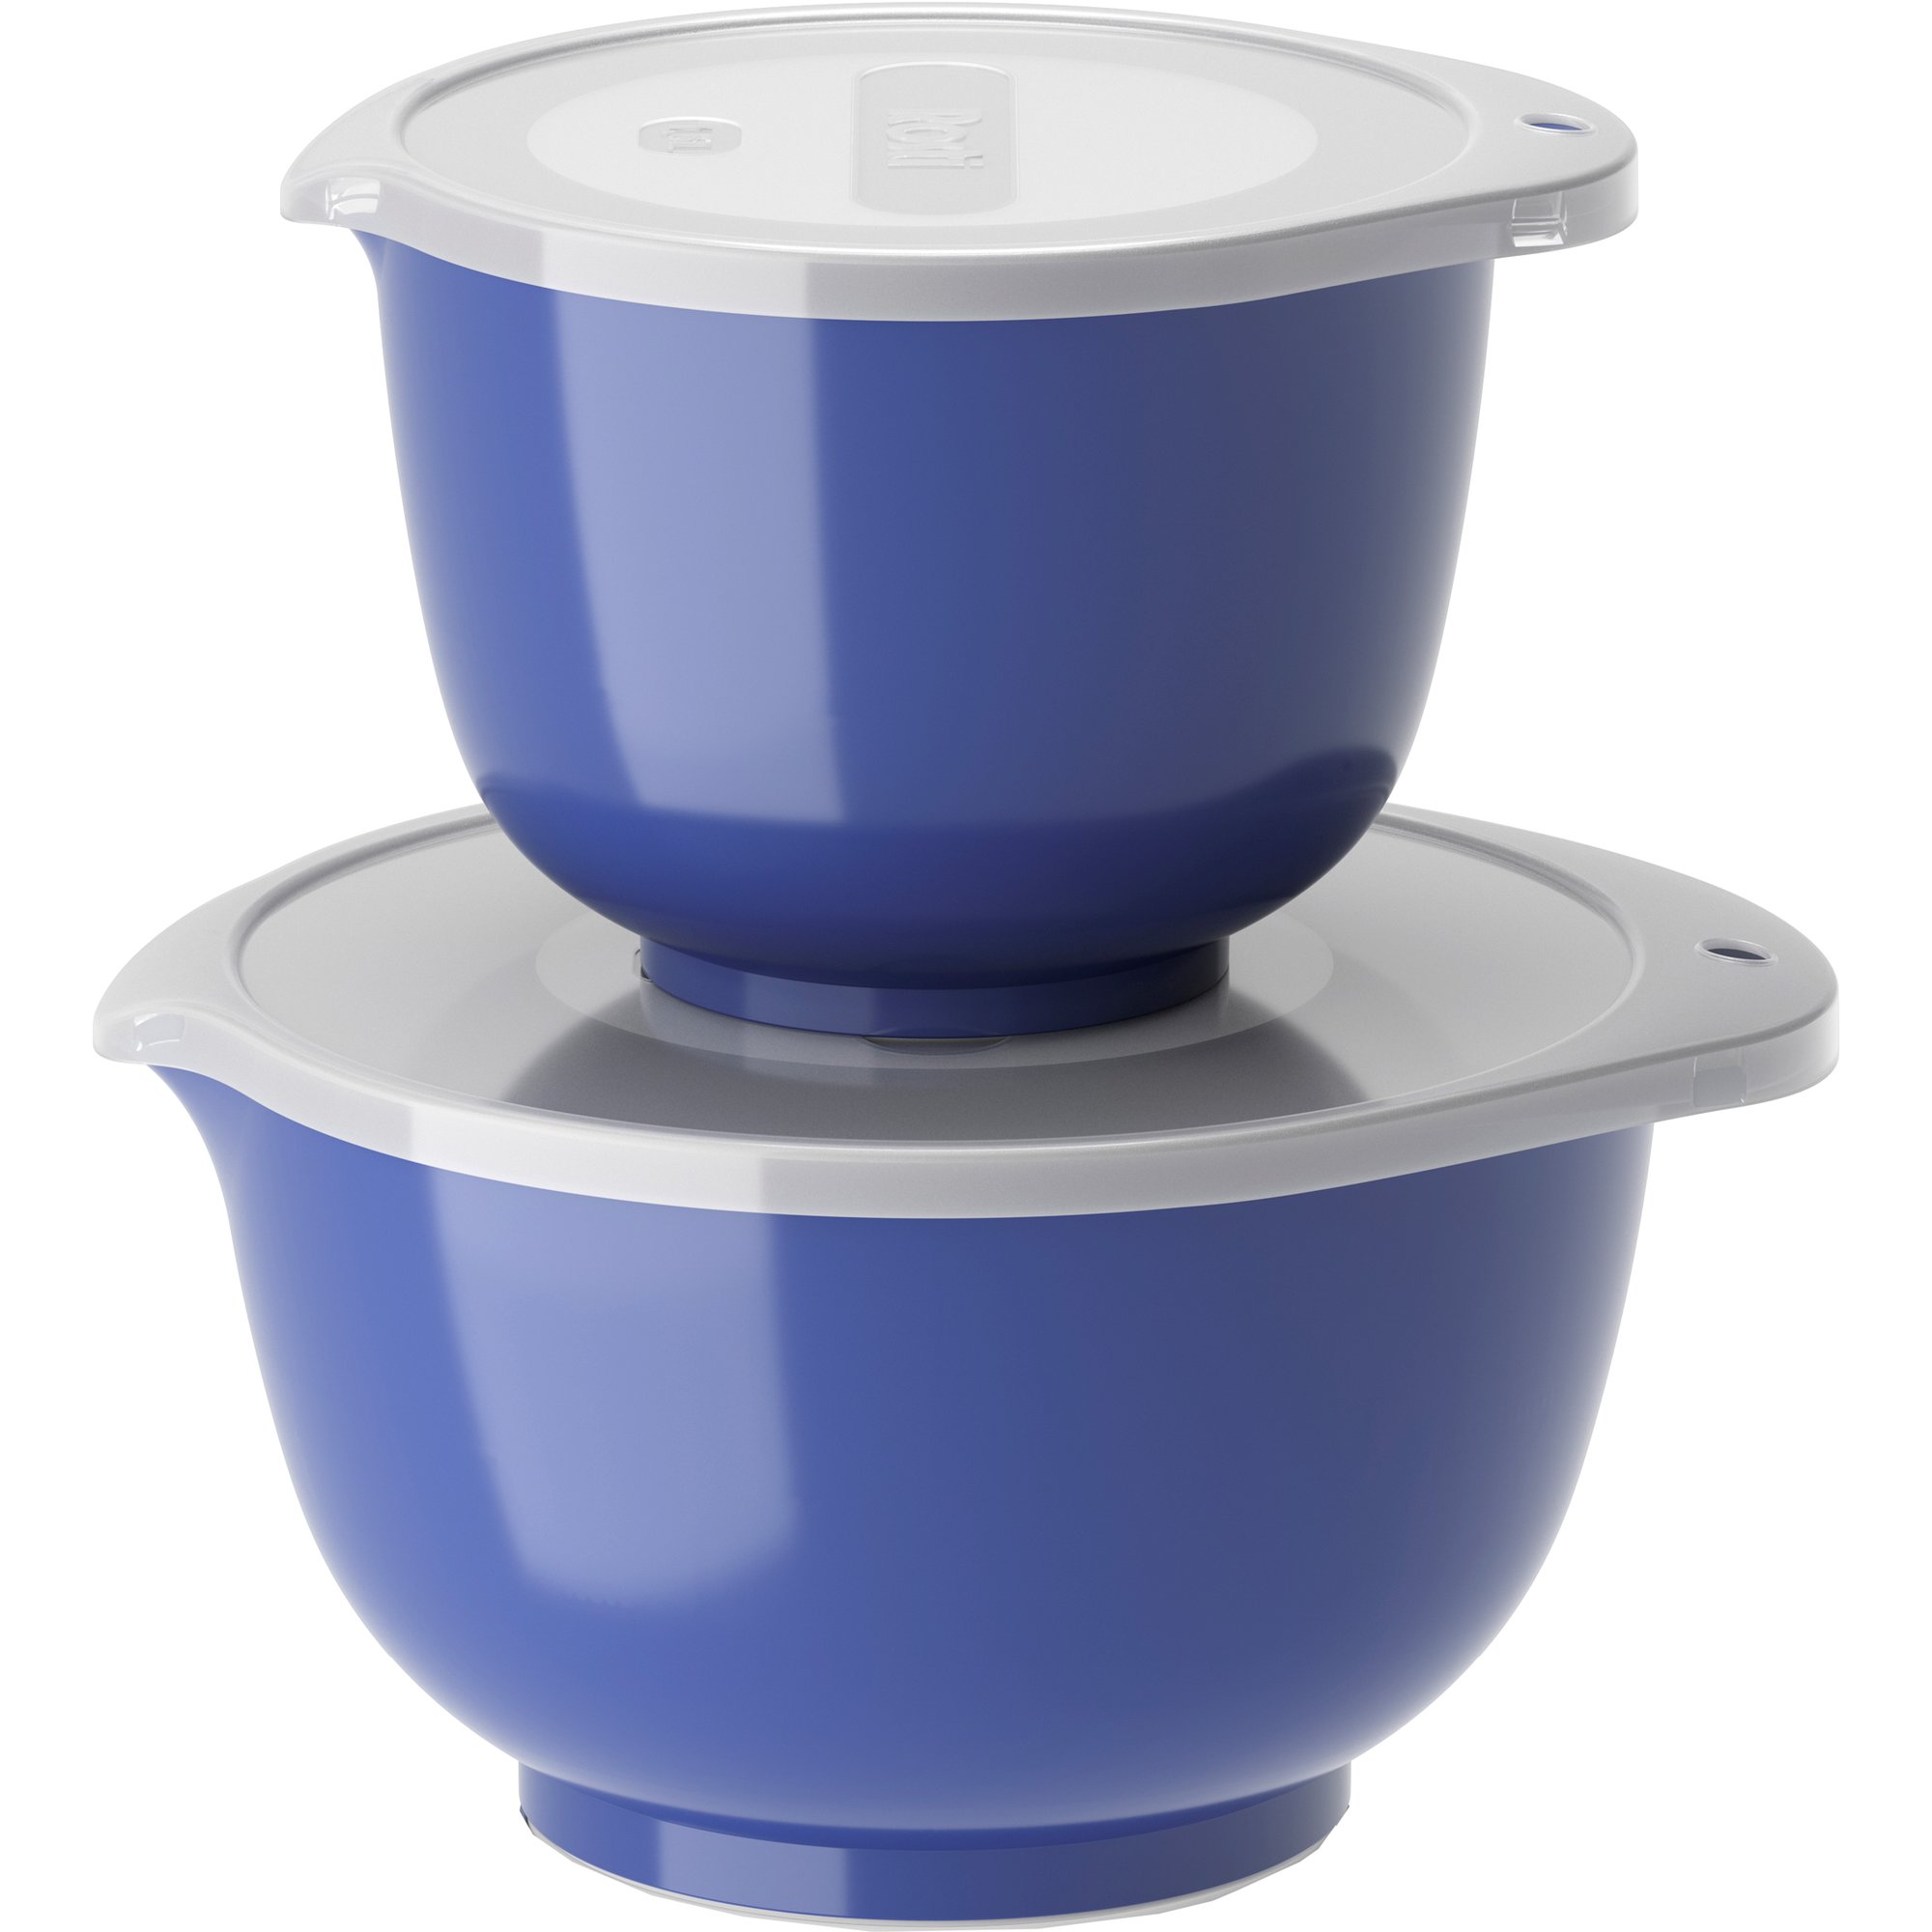 Rosti NEW Margrethe skålsett 1,5 + 3 liter, electric blue Bakebolle sett